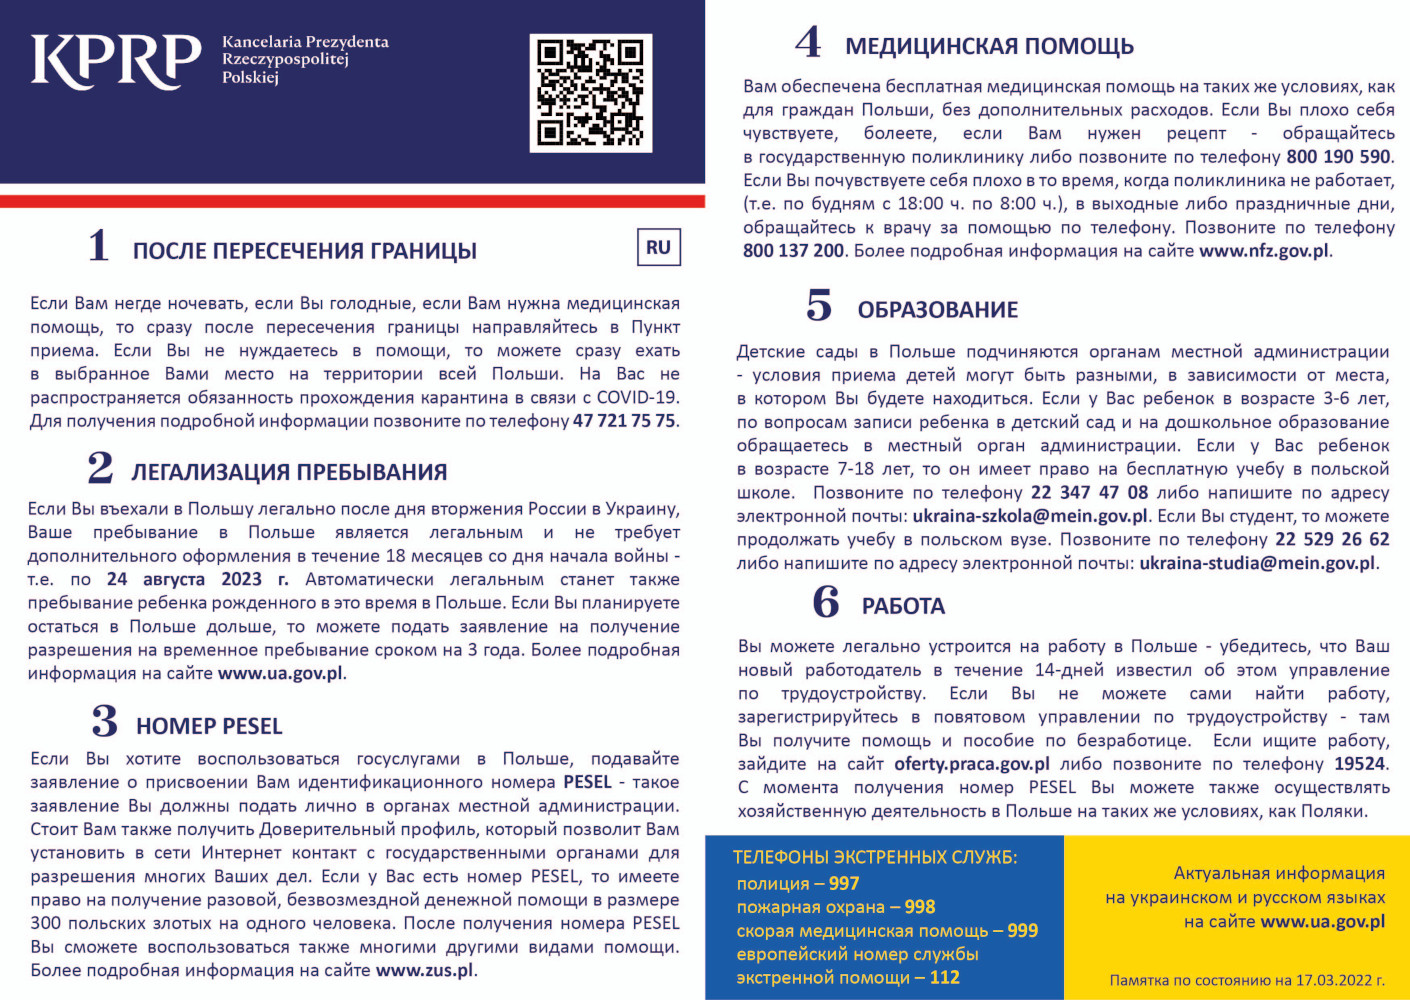 Ulotka ze zaktualizowanymi informacje dla uchodźców przekraczających granicę w języku rosyjskim